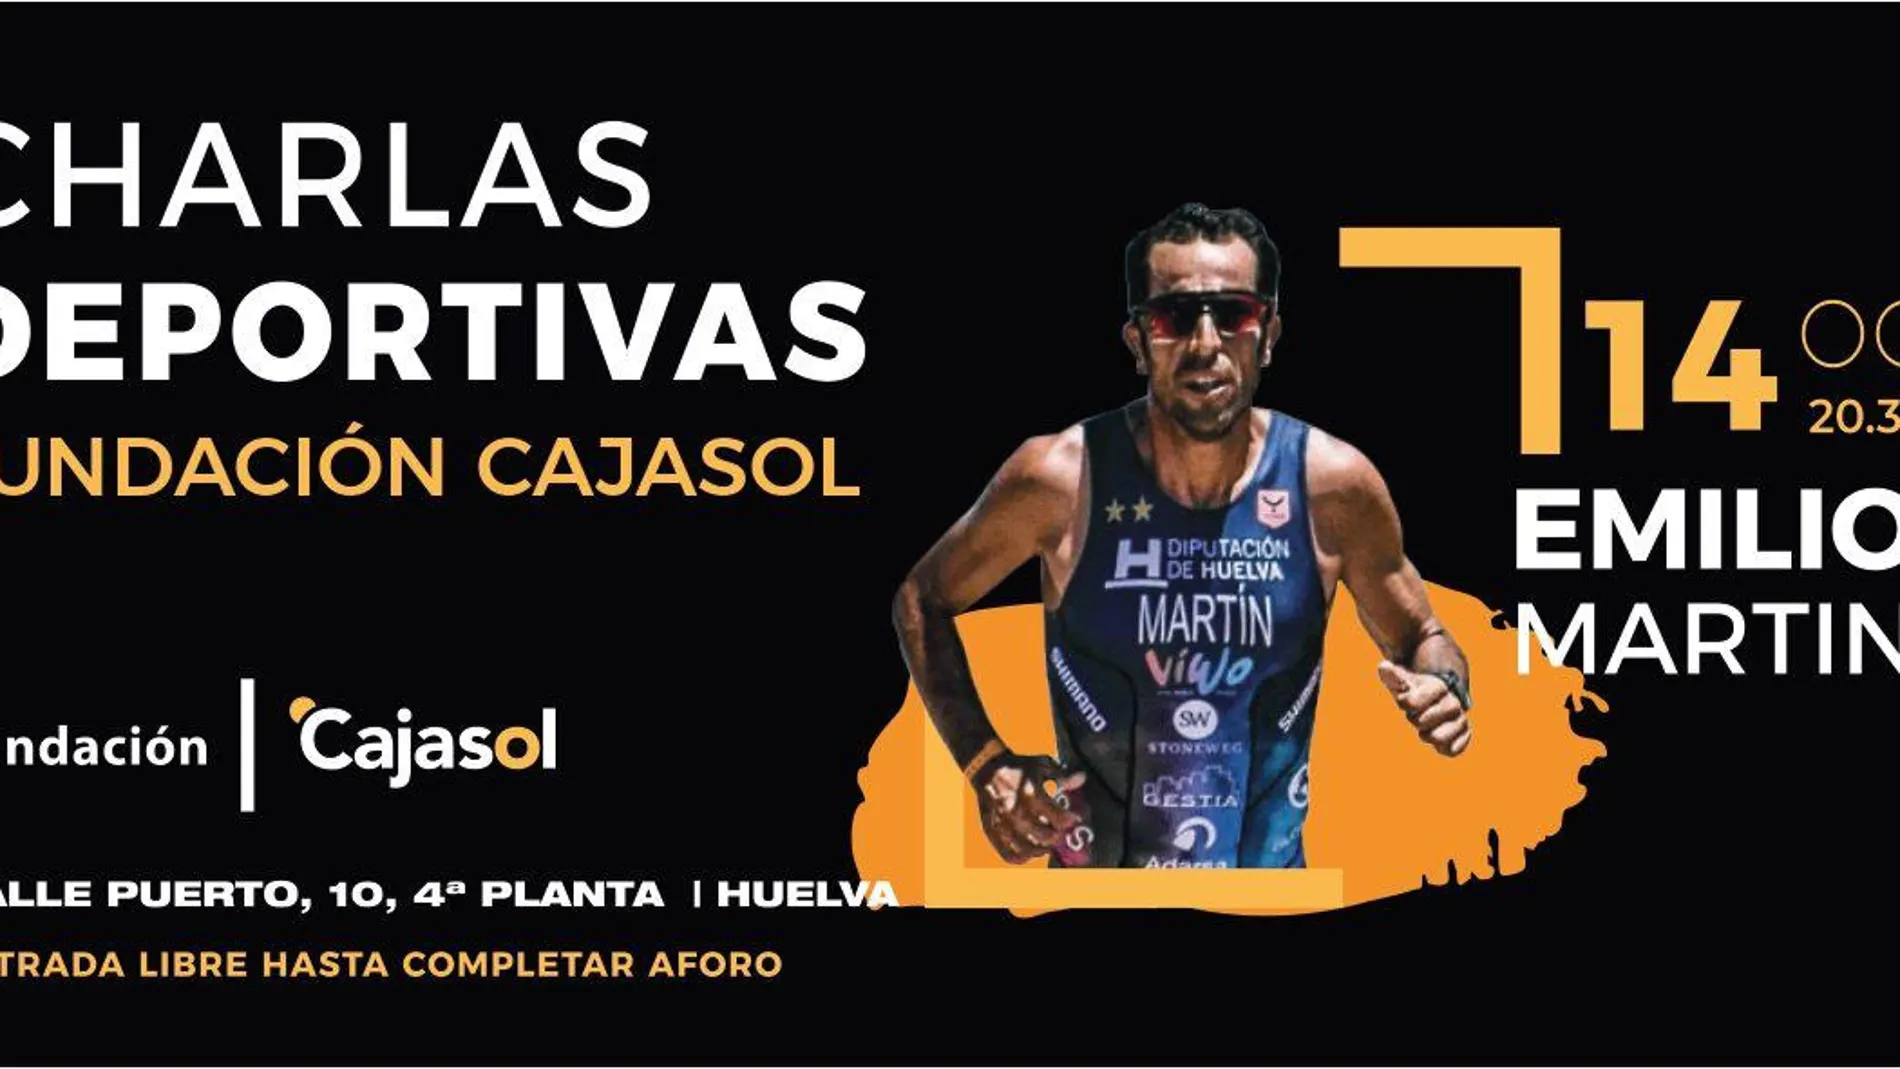 Cartel oficial de las "Charlas deportivas"de la Fundación Cajasol en Huelva / La Razón